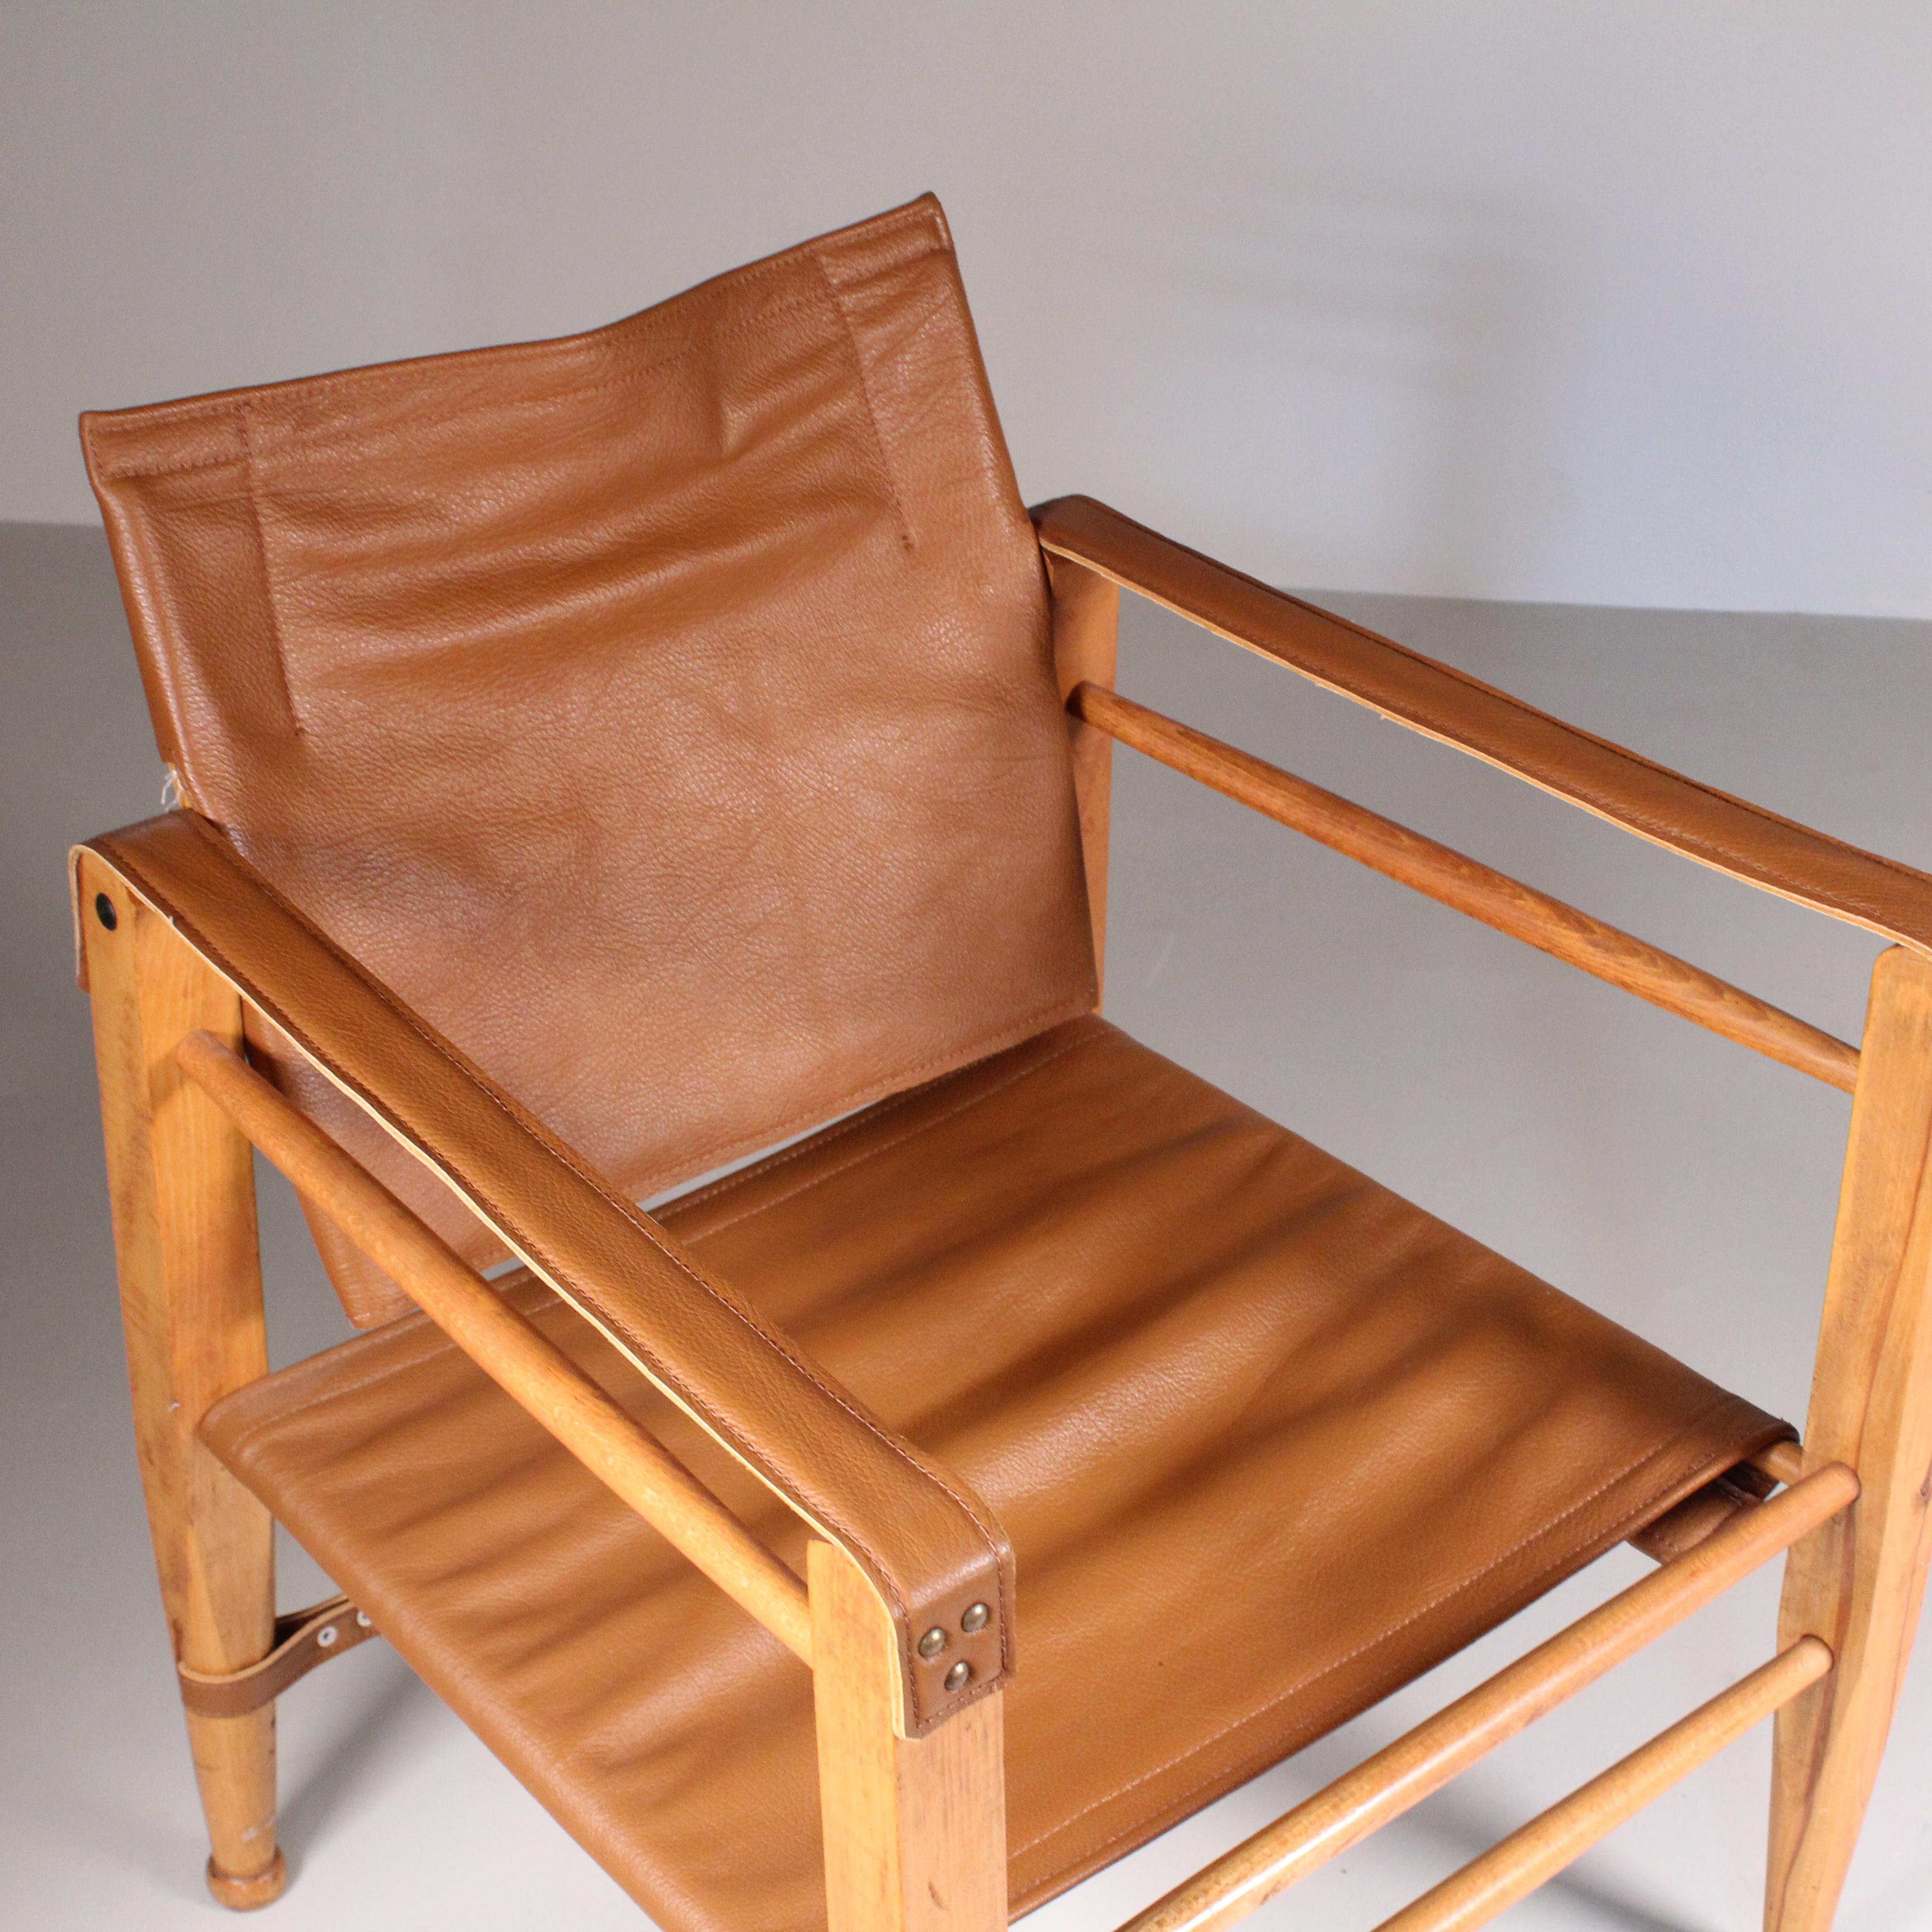 La chaise en cuir Safari de Fritz Hansen, datant des années 1960, est une icône du design moderne danois. Dotée d'une élégante structure en bois, cette chaise est recouverte de cuir fin, ce qui confère une touche de luxe et de confort à l'ensemble.